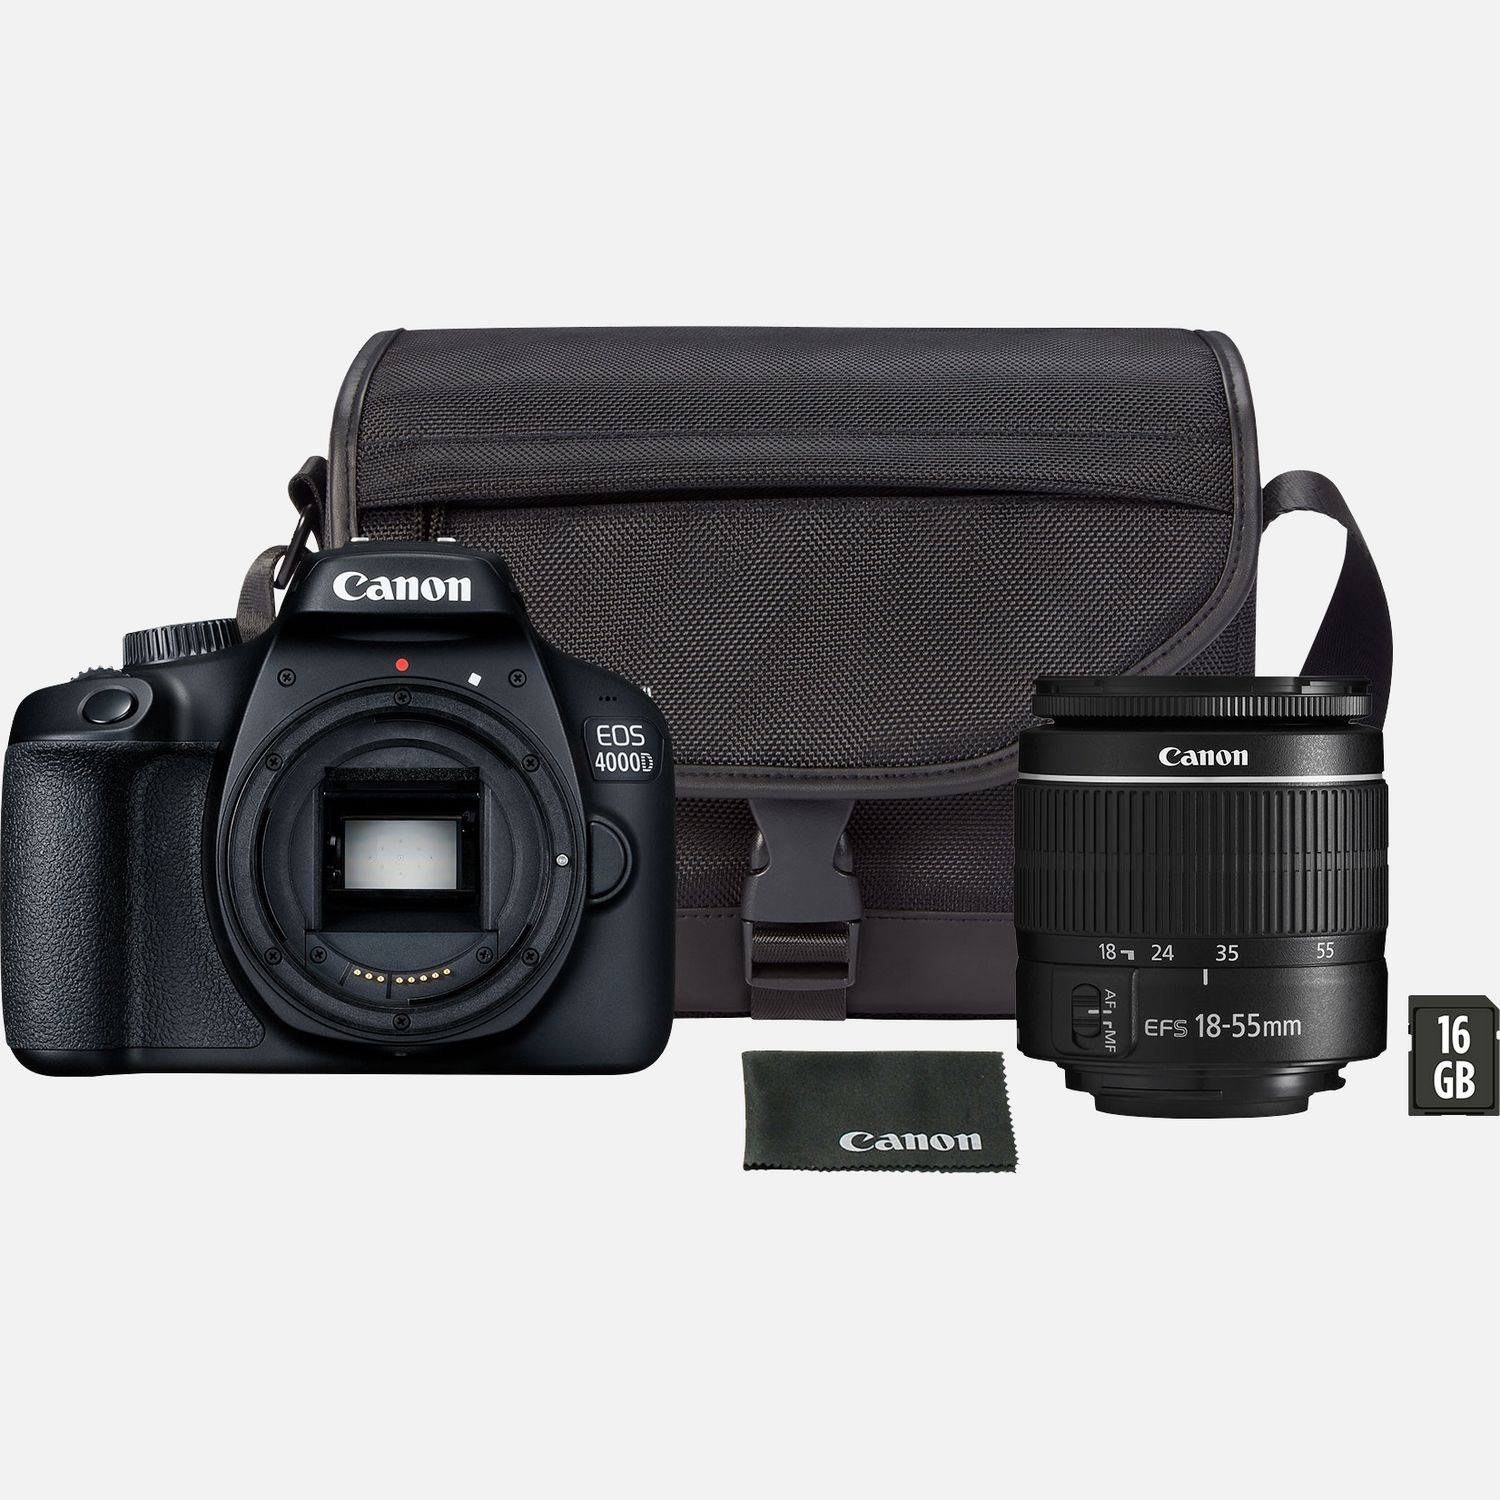 Image of Fotocamera Canon EOS 4000D, Nero + Obiettivo 18-55 III + Borsa SB130 + Scheda SD (VUK)